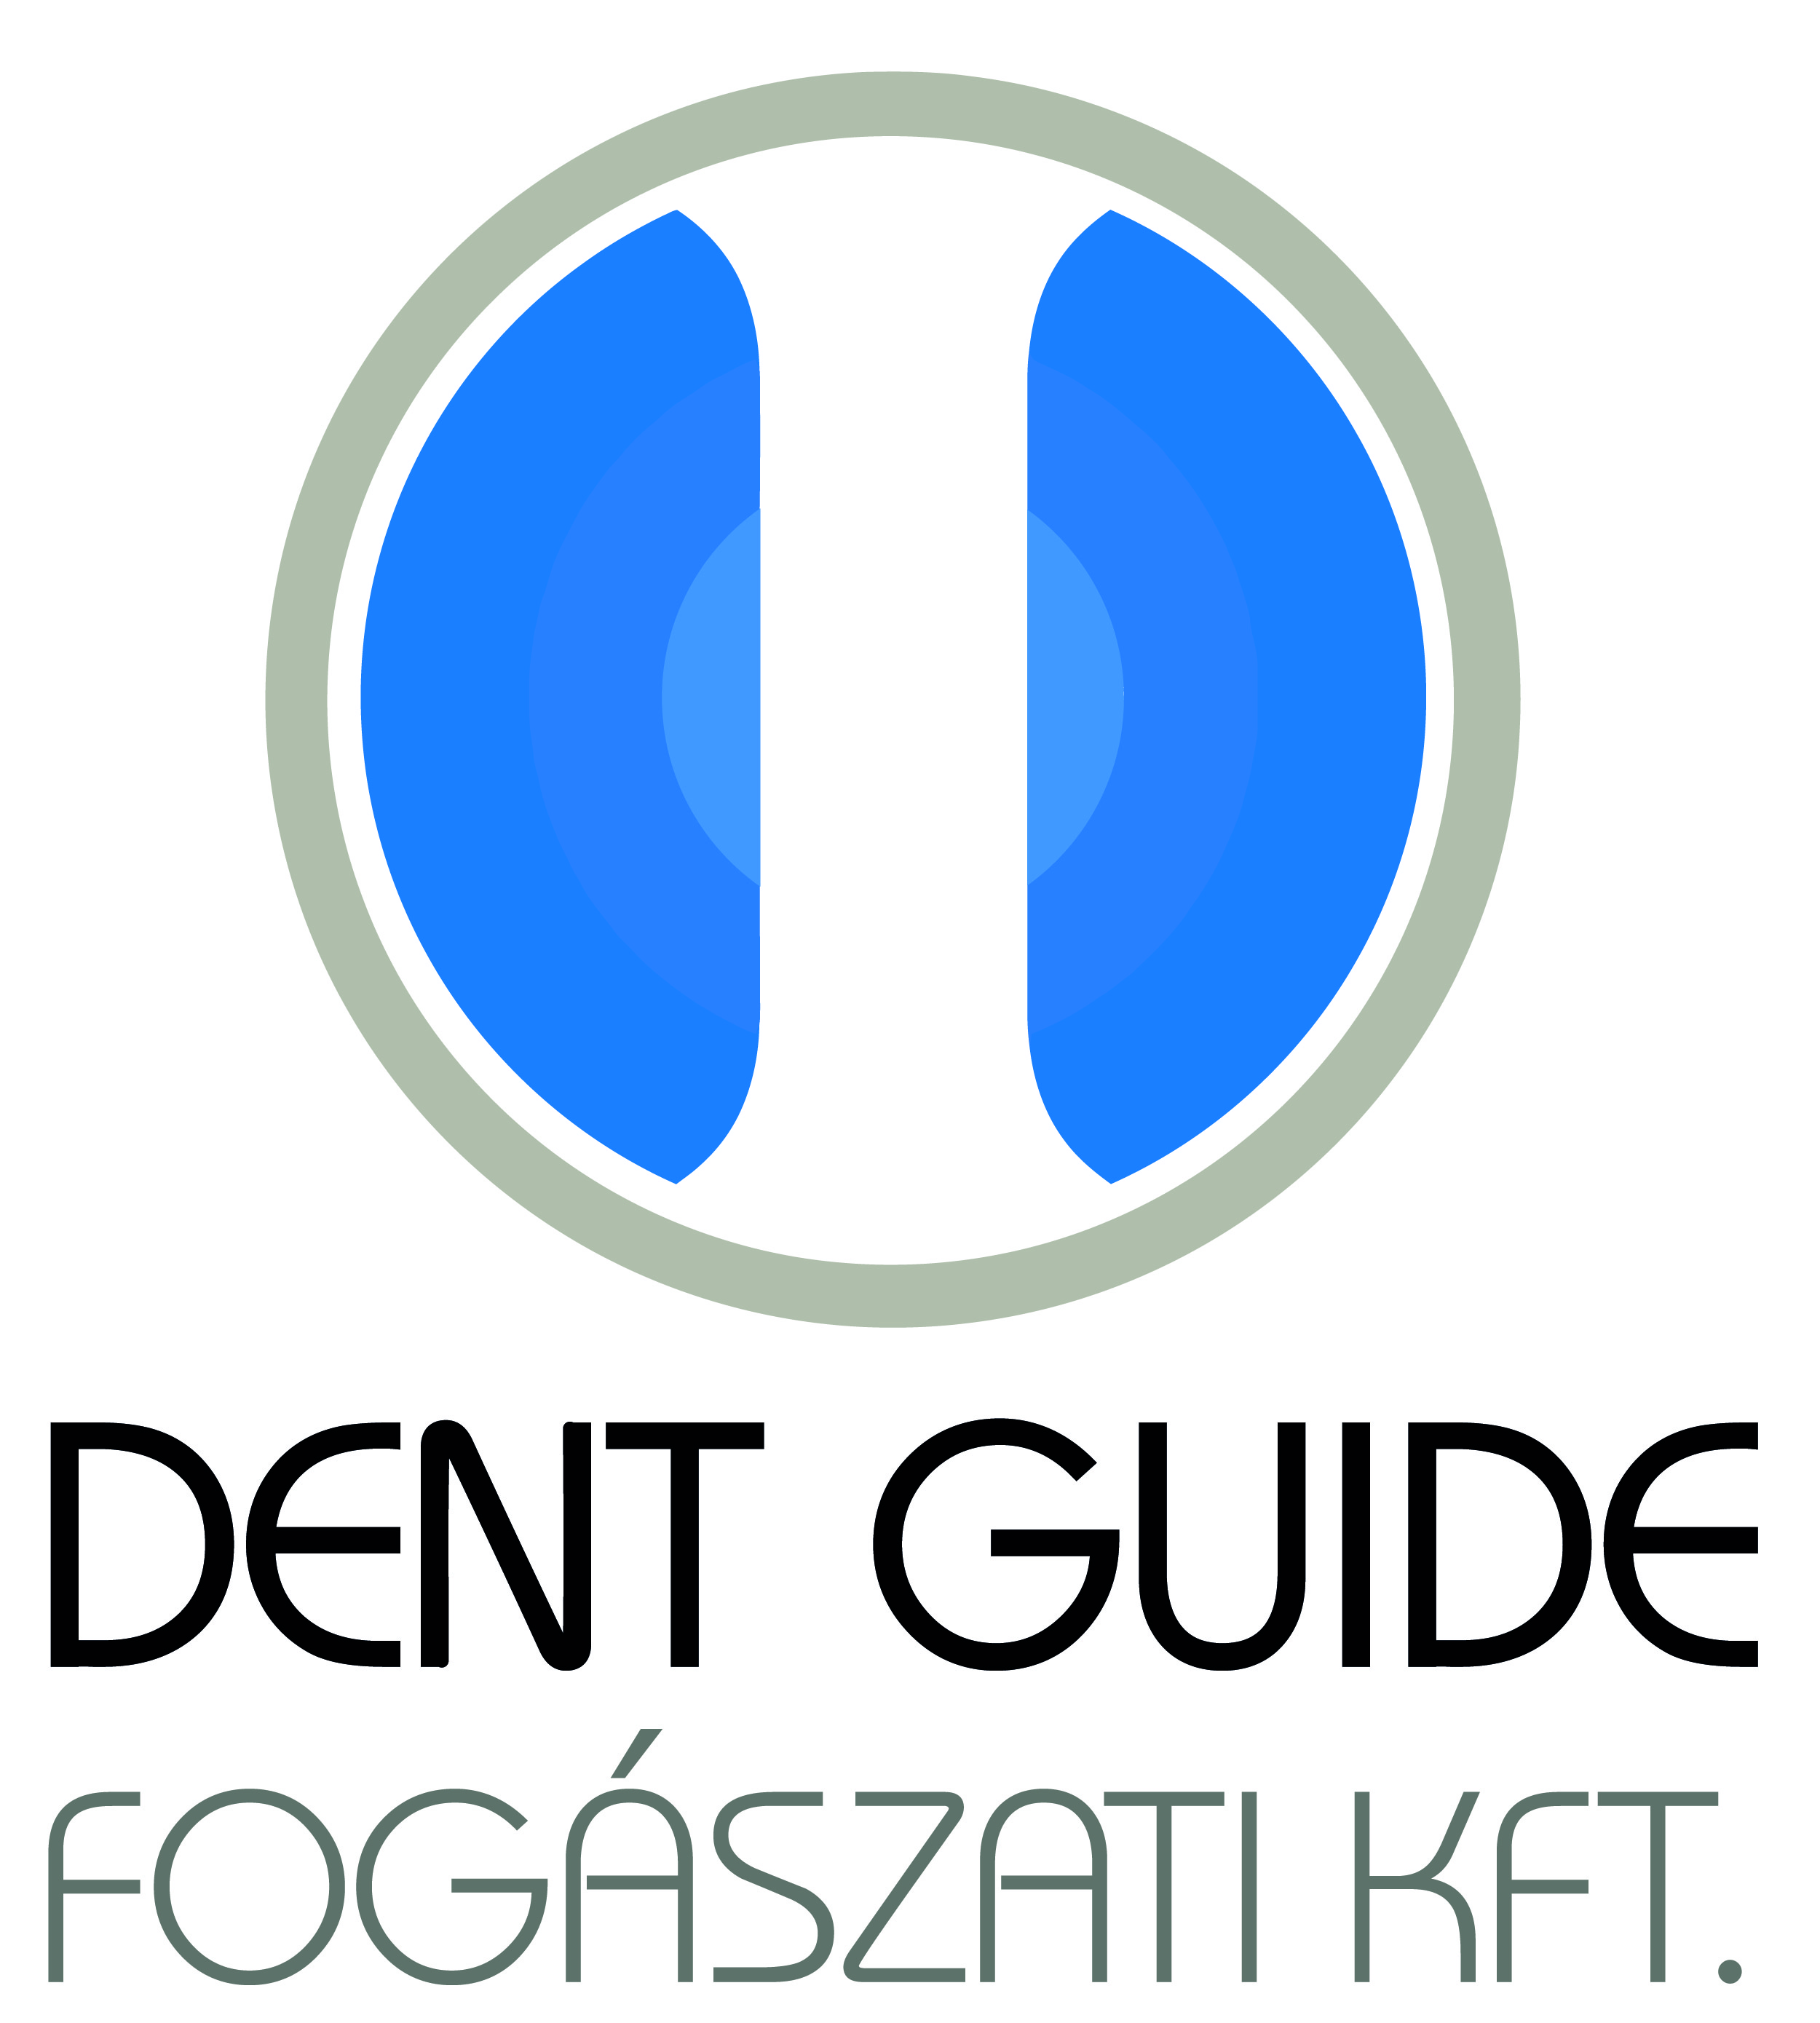 Dent Guide Fogászati Kft